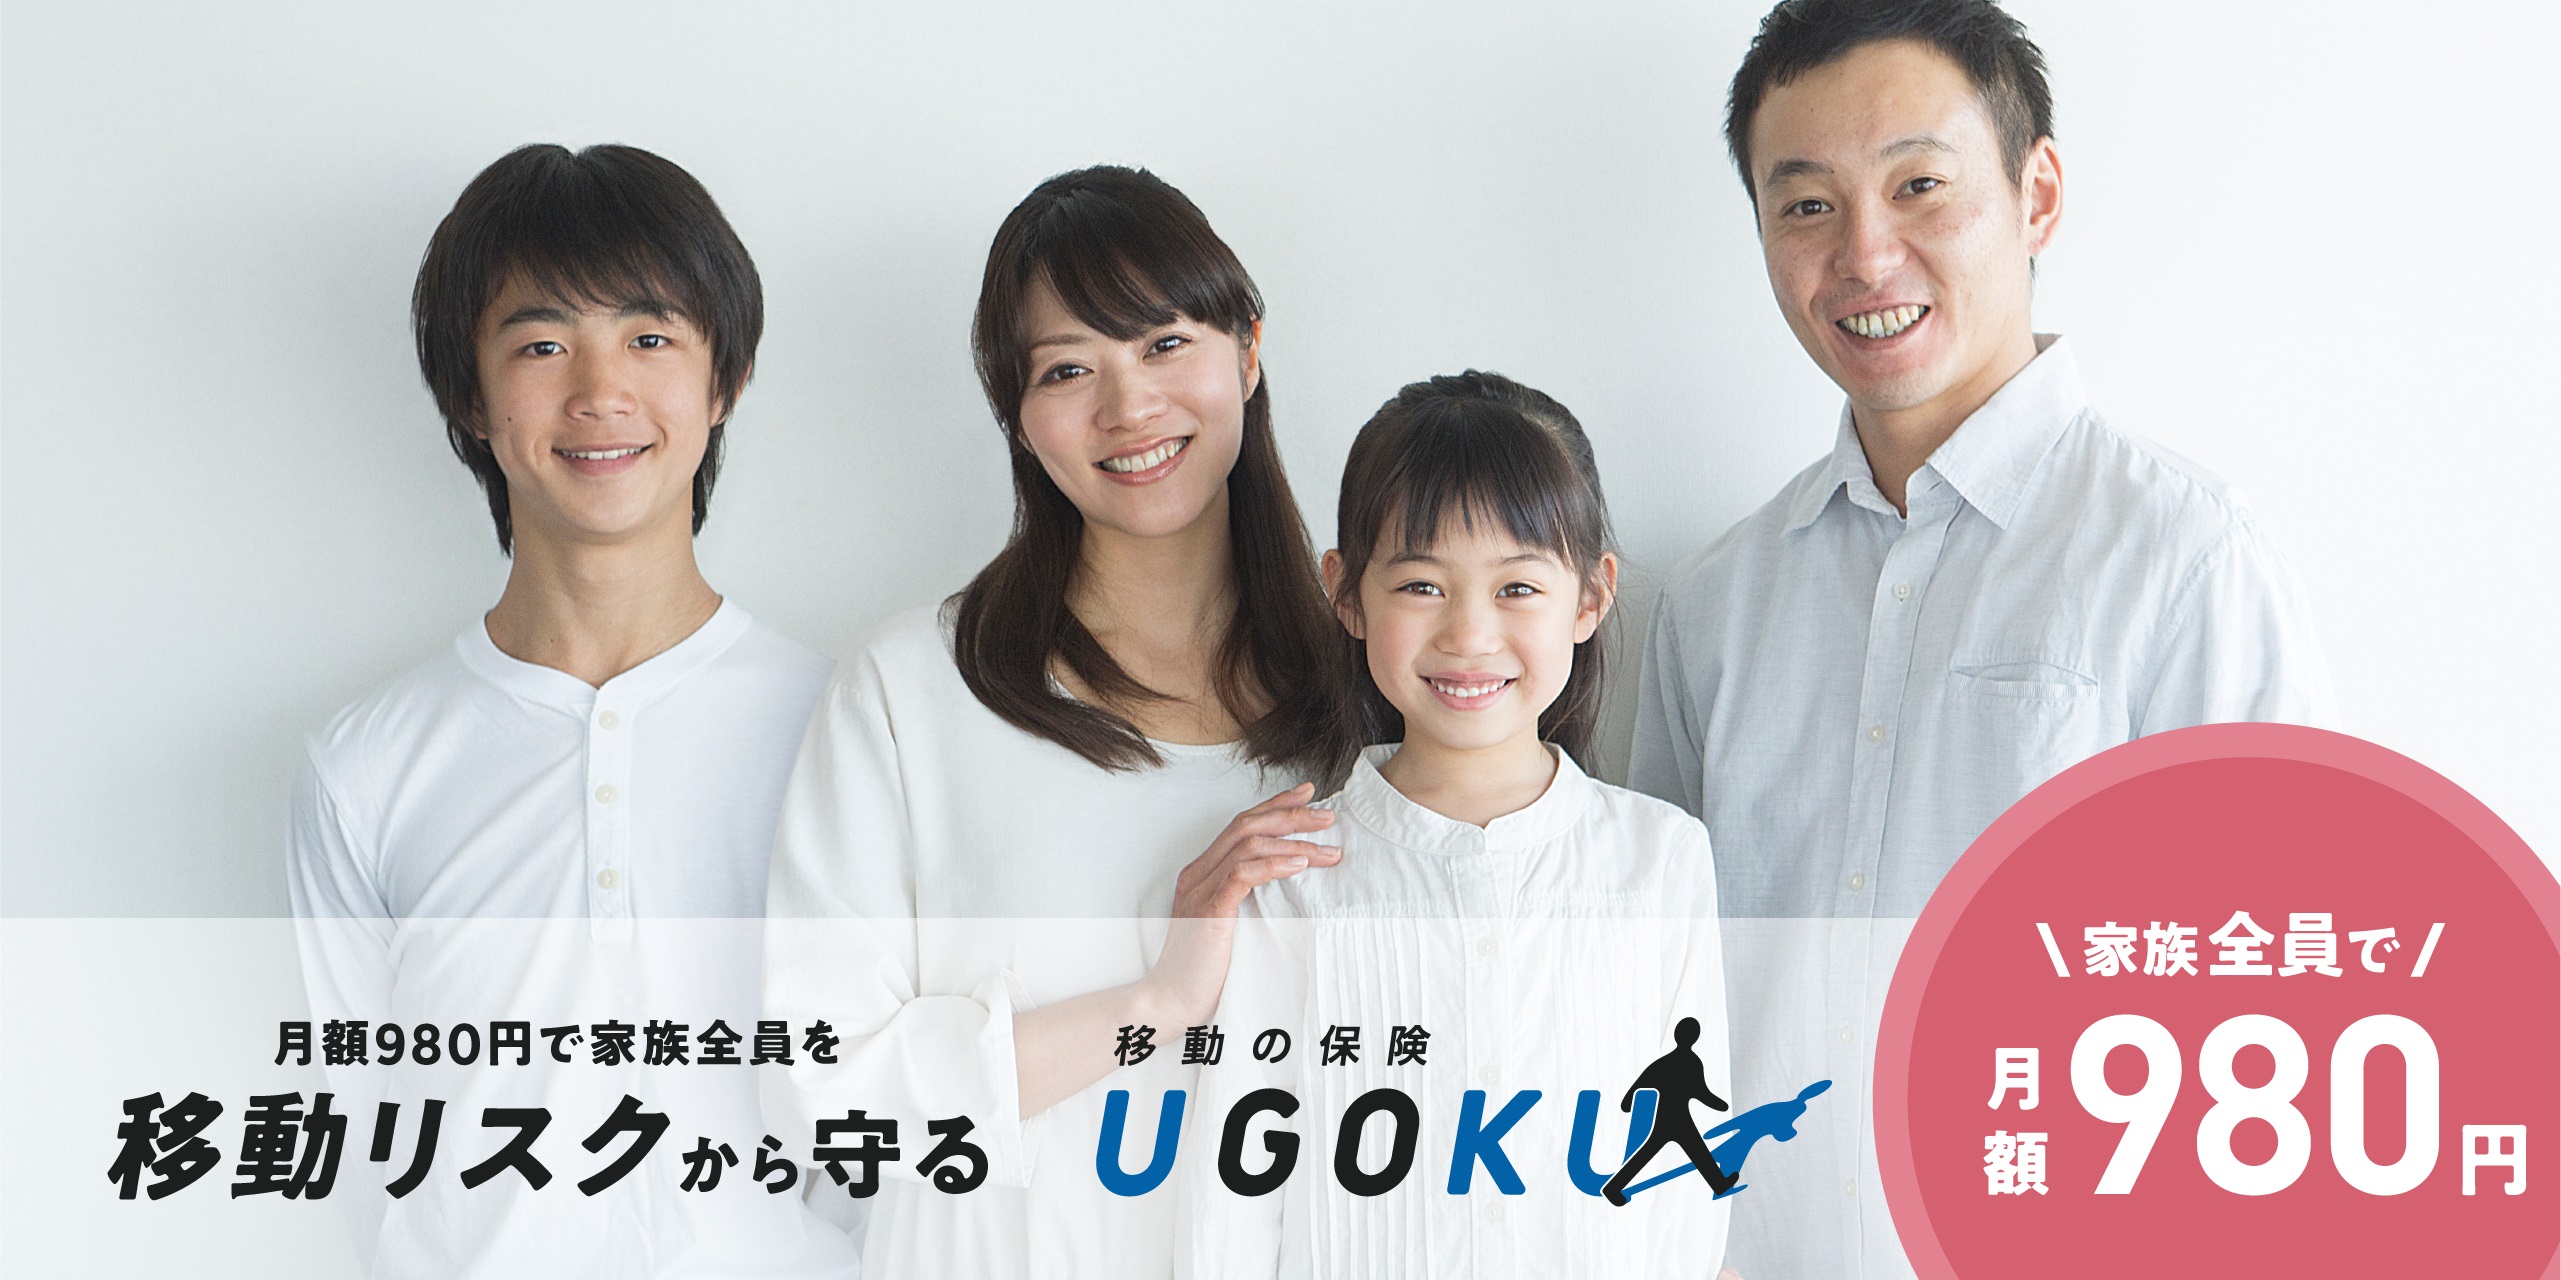 UGOKU 移動の保険